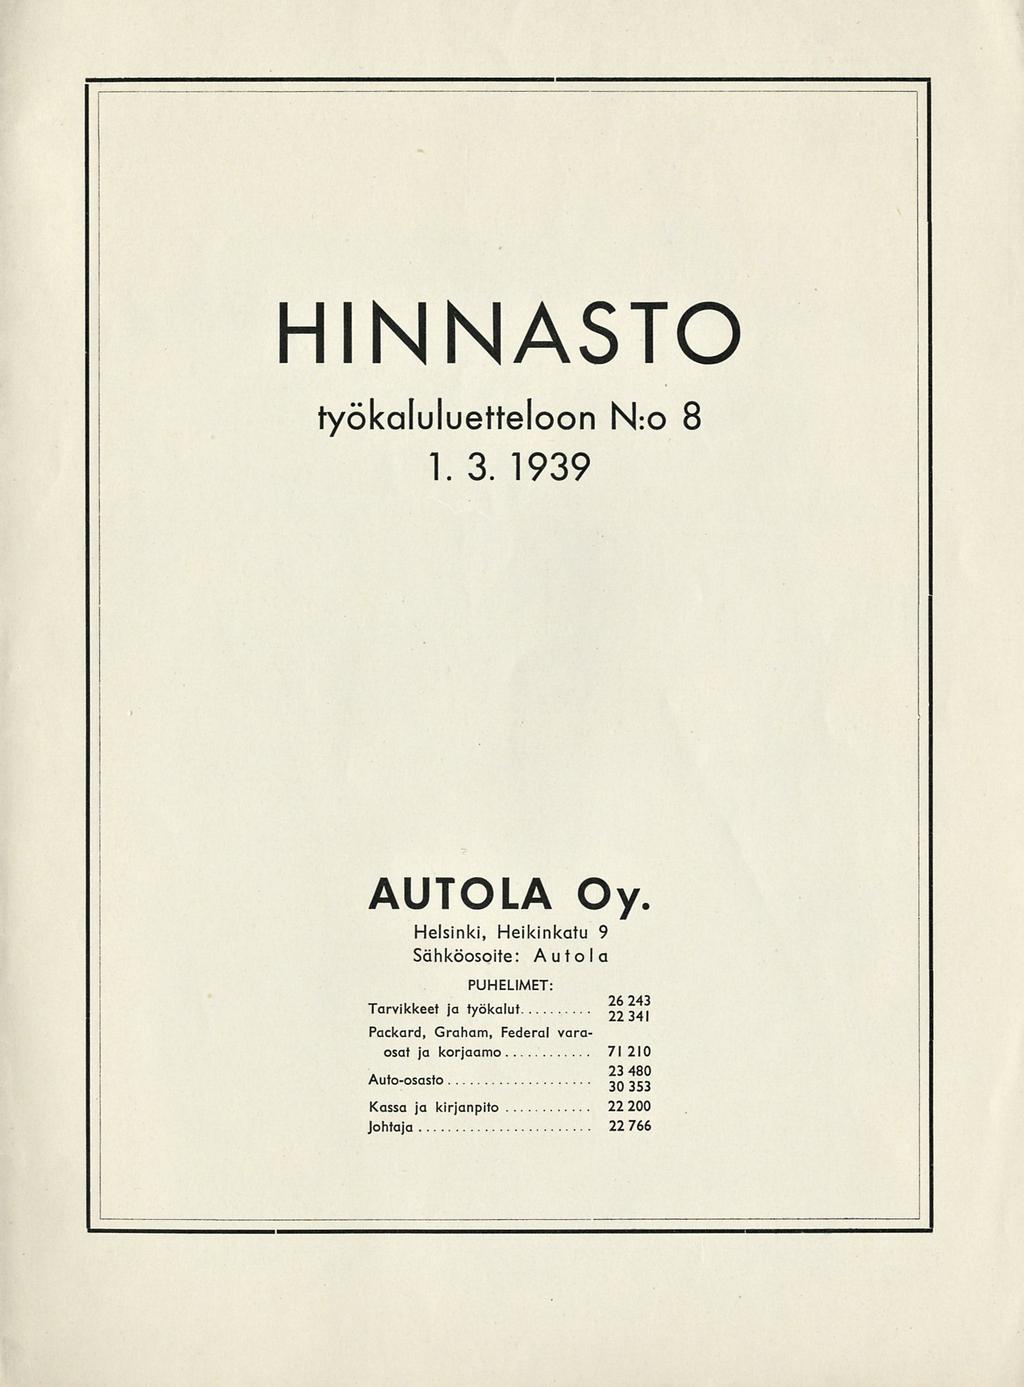 HINNASTO työkaluluetteloon N:o 8 1.3.1939 AUTOLA Oy.